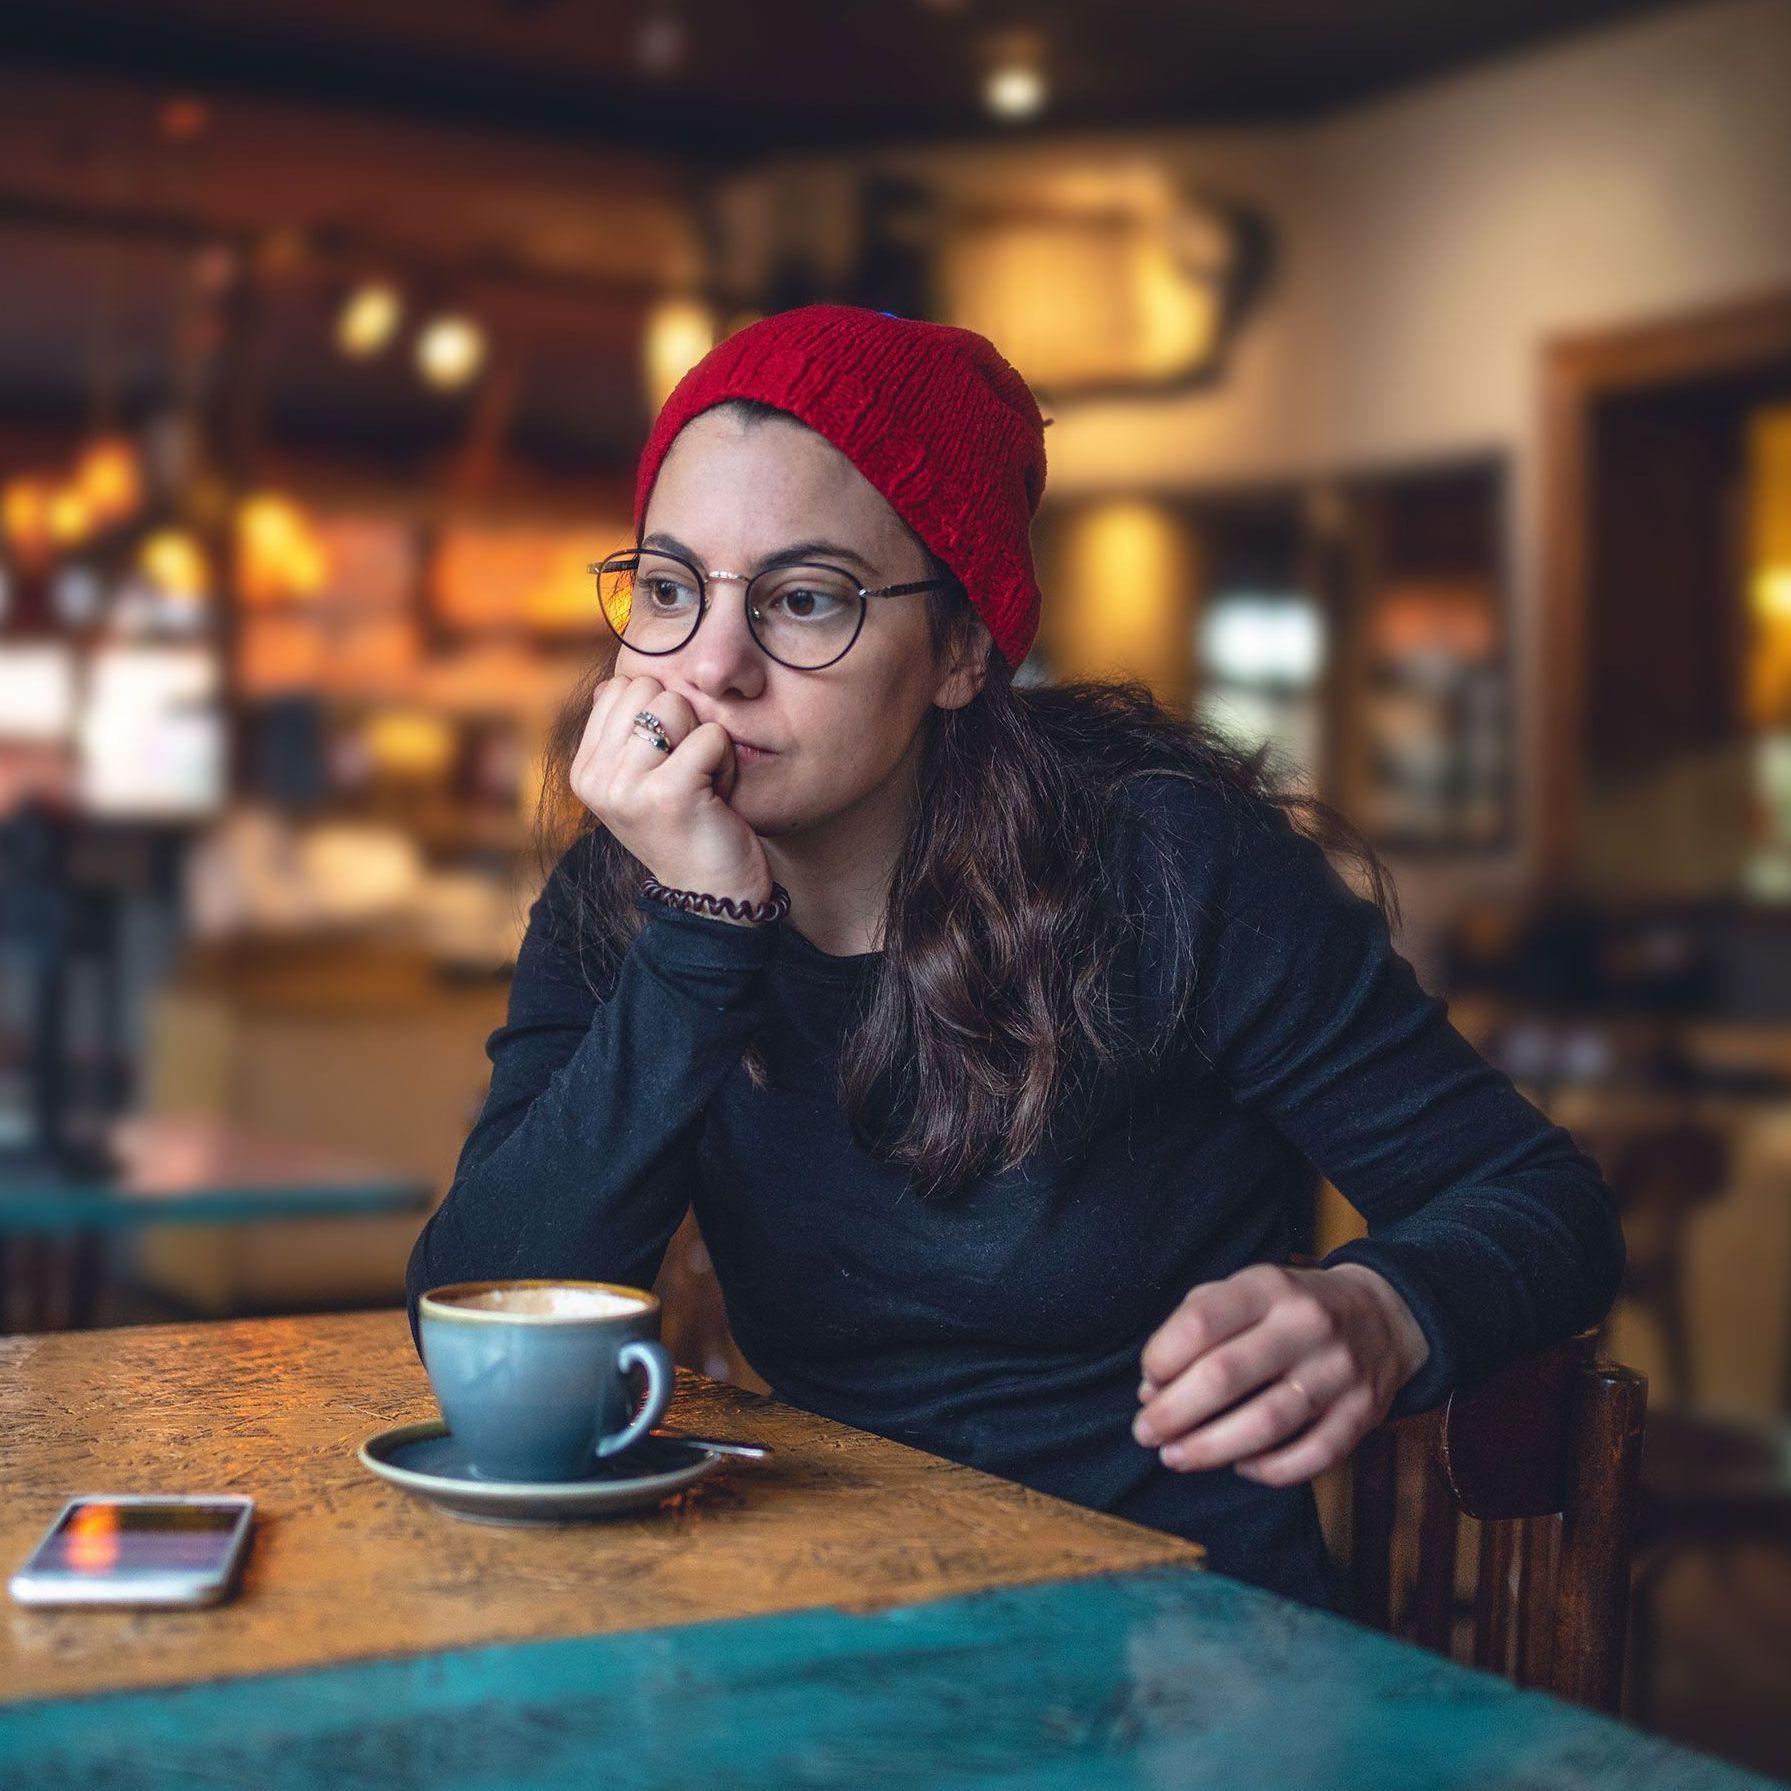 Eine junge Frau mit roter Mütze und runder Brille hat den Kopf auf die Hand gestützt und schaut ernst zum Cafe-Fenster. Vor ihr steht eine Kaffeetasse und ein Handy.